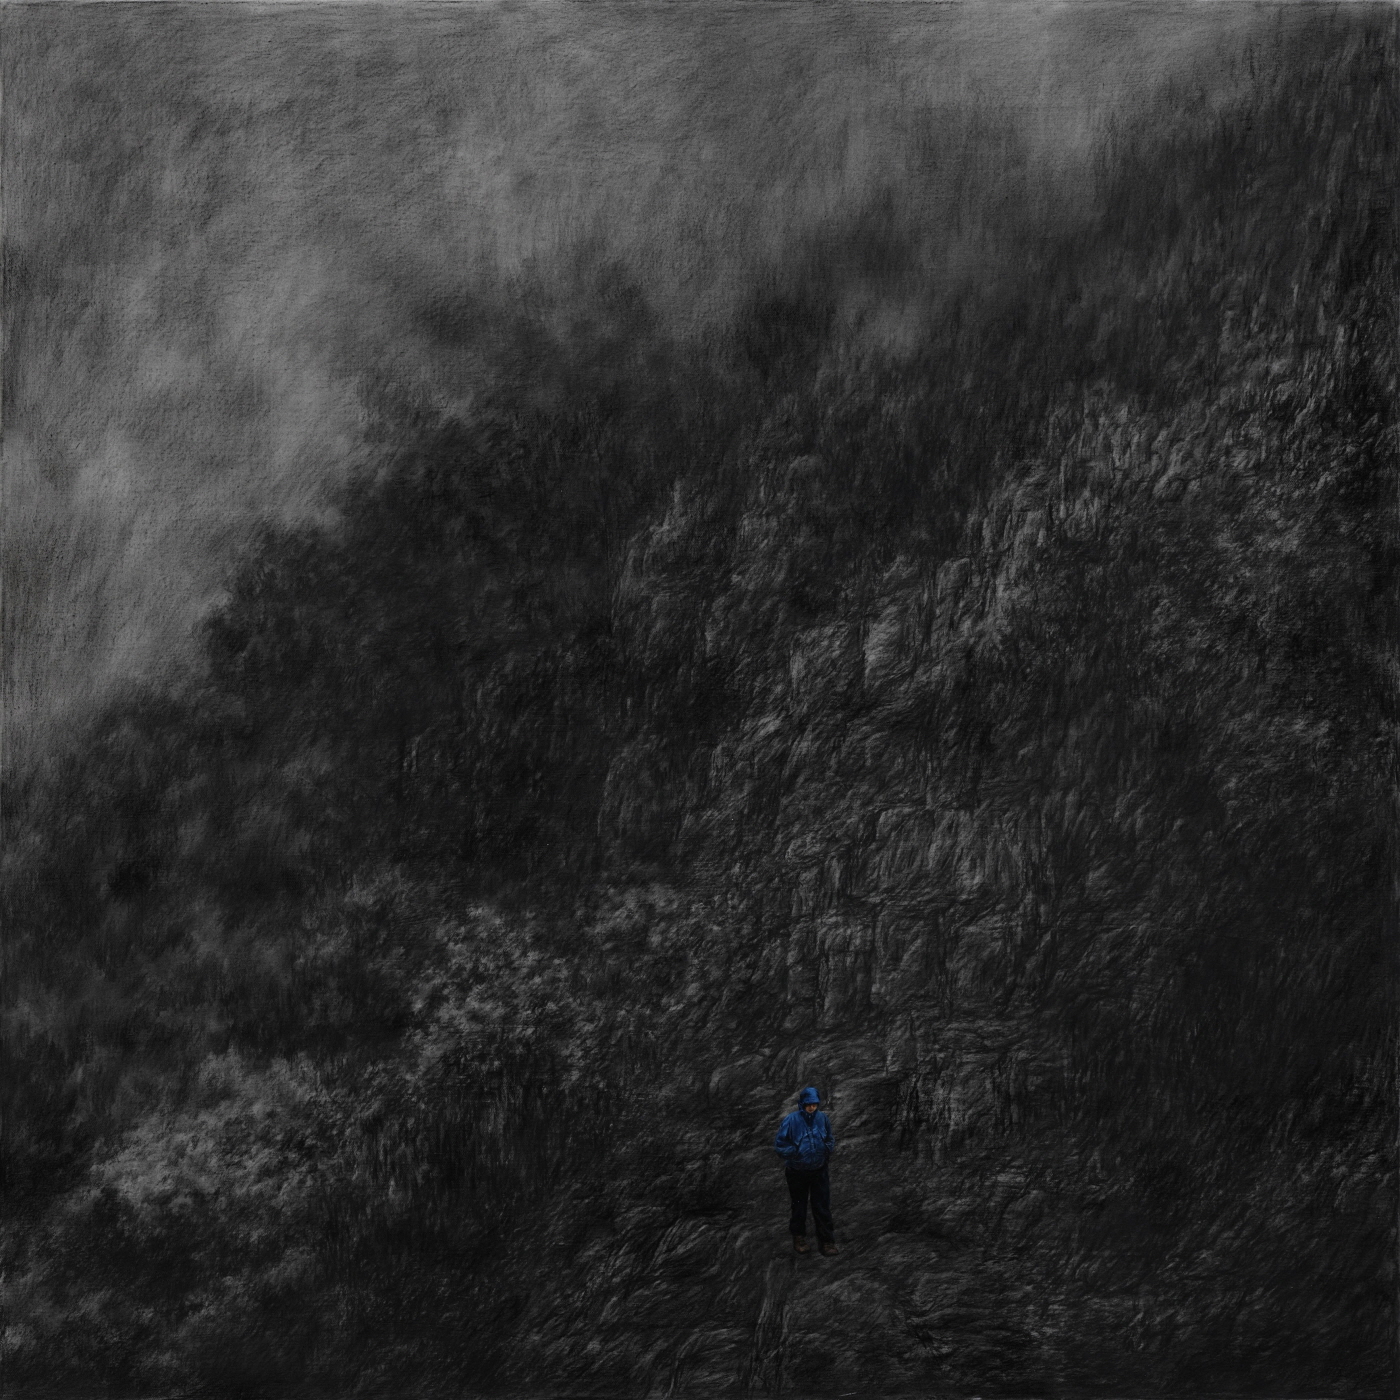 이경하-내려오는사람,97x97cm, charocoal and oil on canvas, 2014 